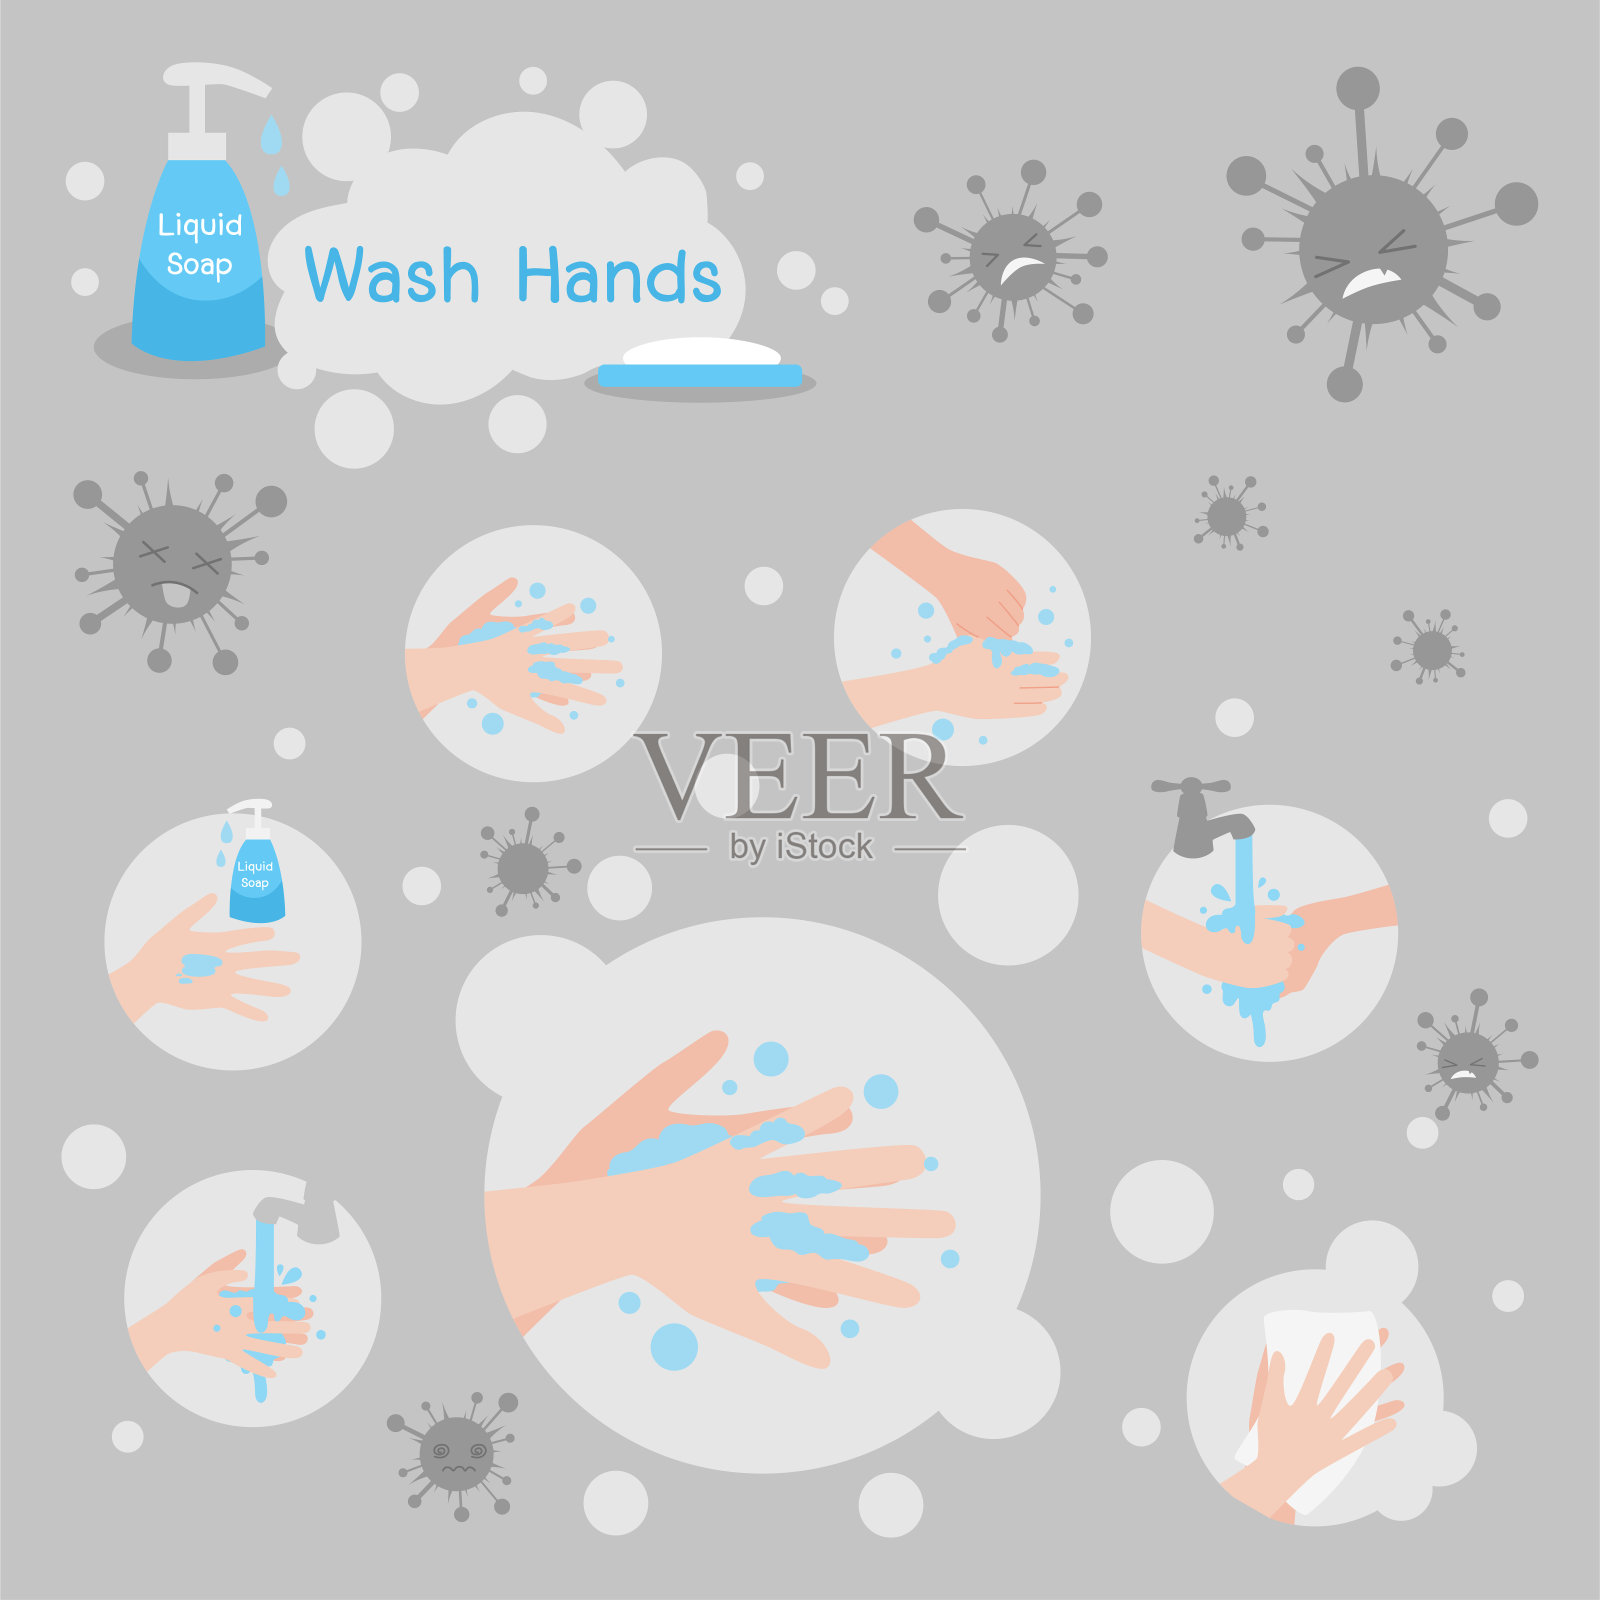 用肥皂洗手，洗手液能杀灭病毒，保护身体插画图片素材